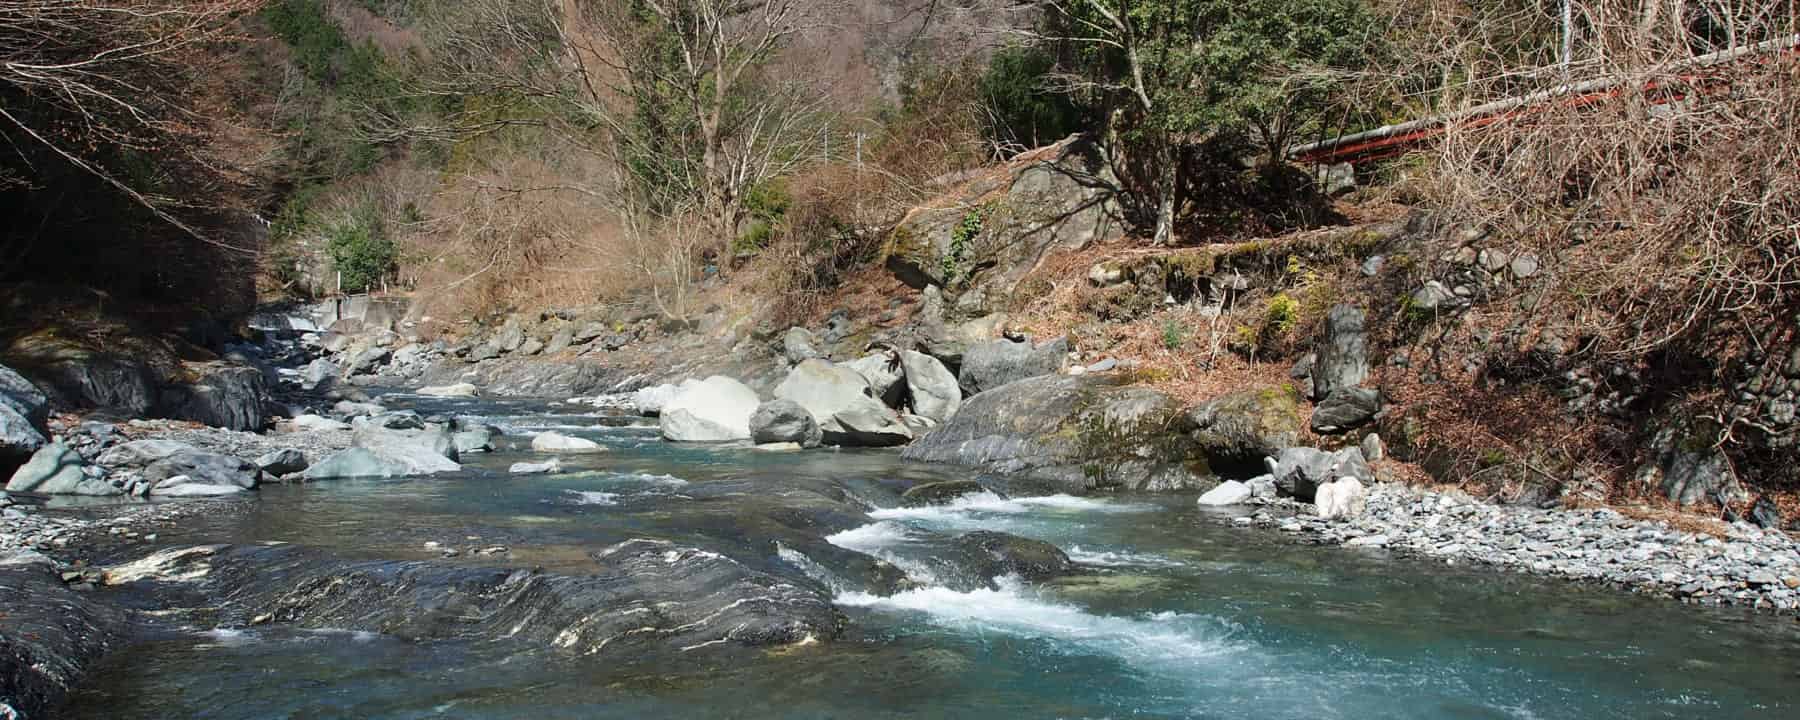 早川保川渓流釣りポイント